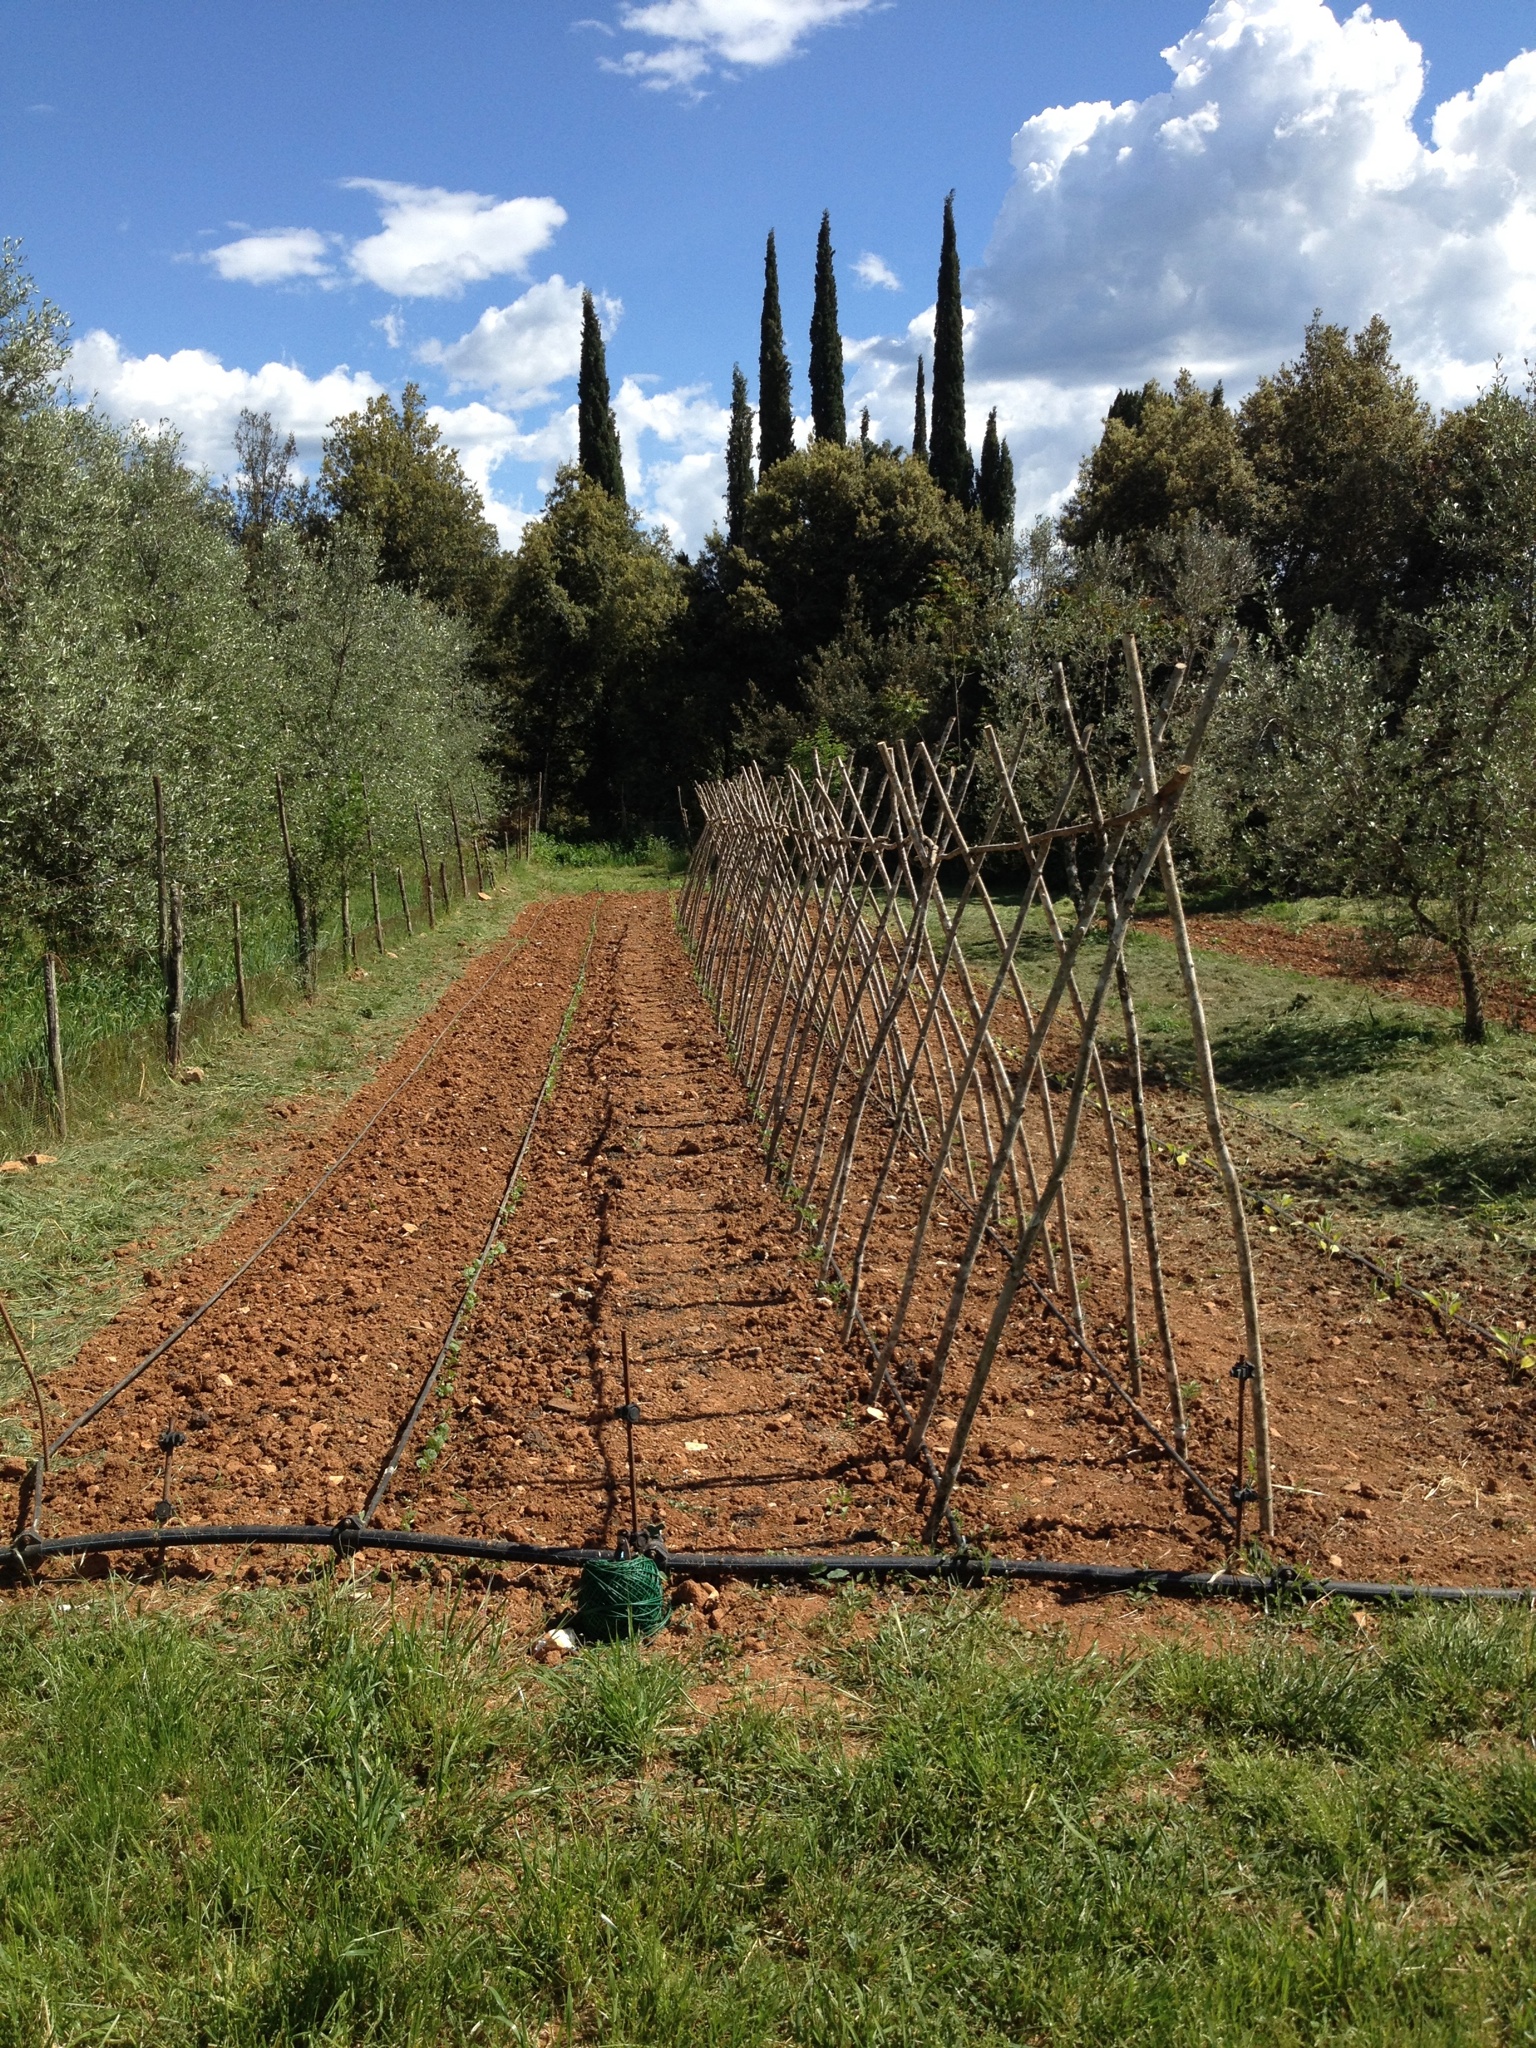 Bean and asparagus plots at Spannocchia